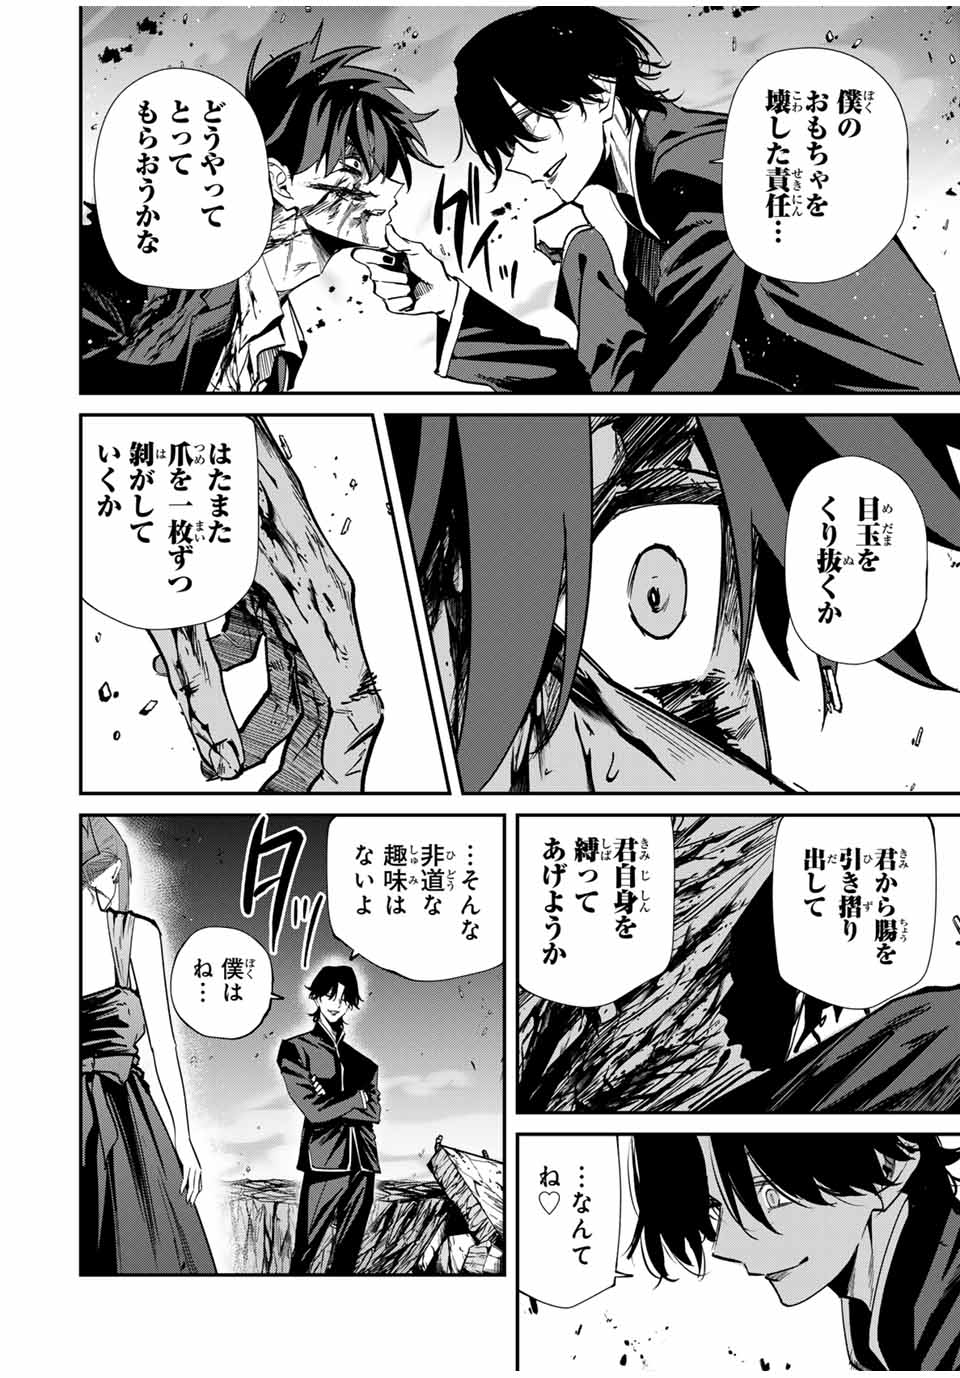 Kono Sekai ga Izure Horobu Koto wo, Ore dake ga Shitte Iru - Chapter 64 - Page 6